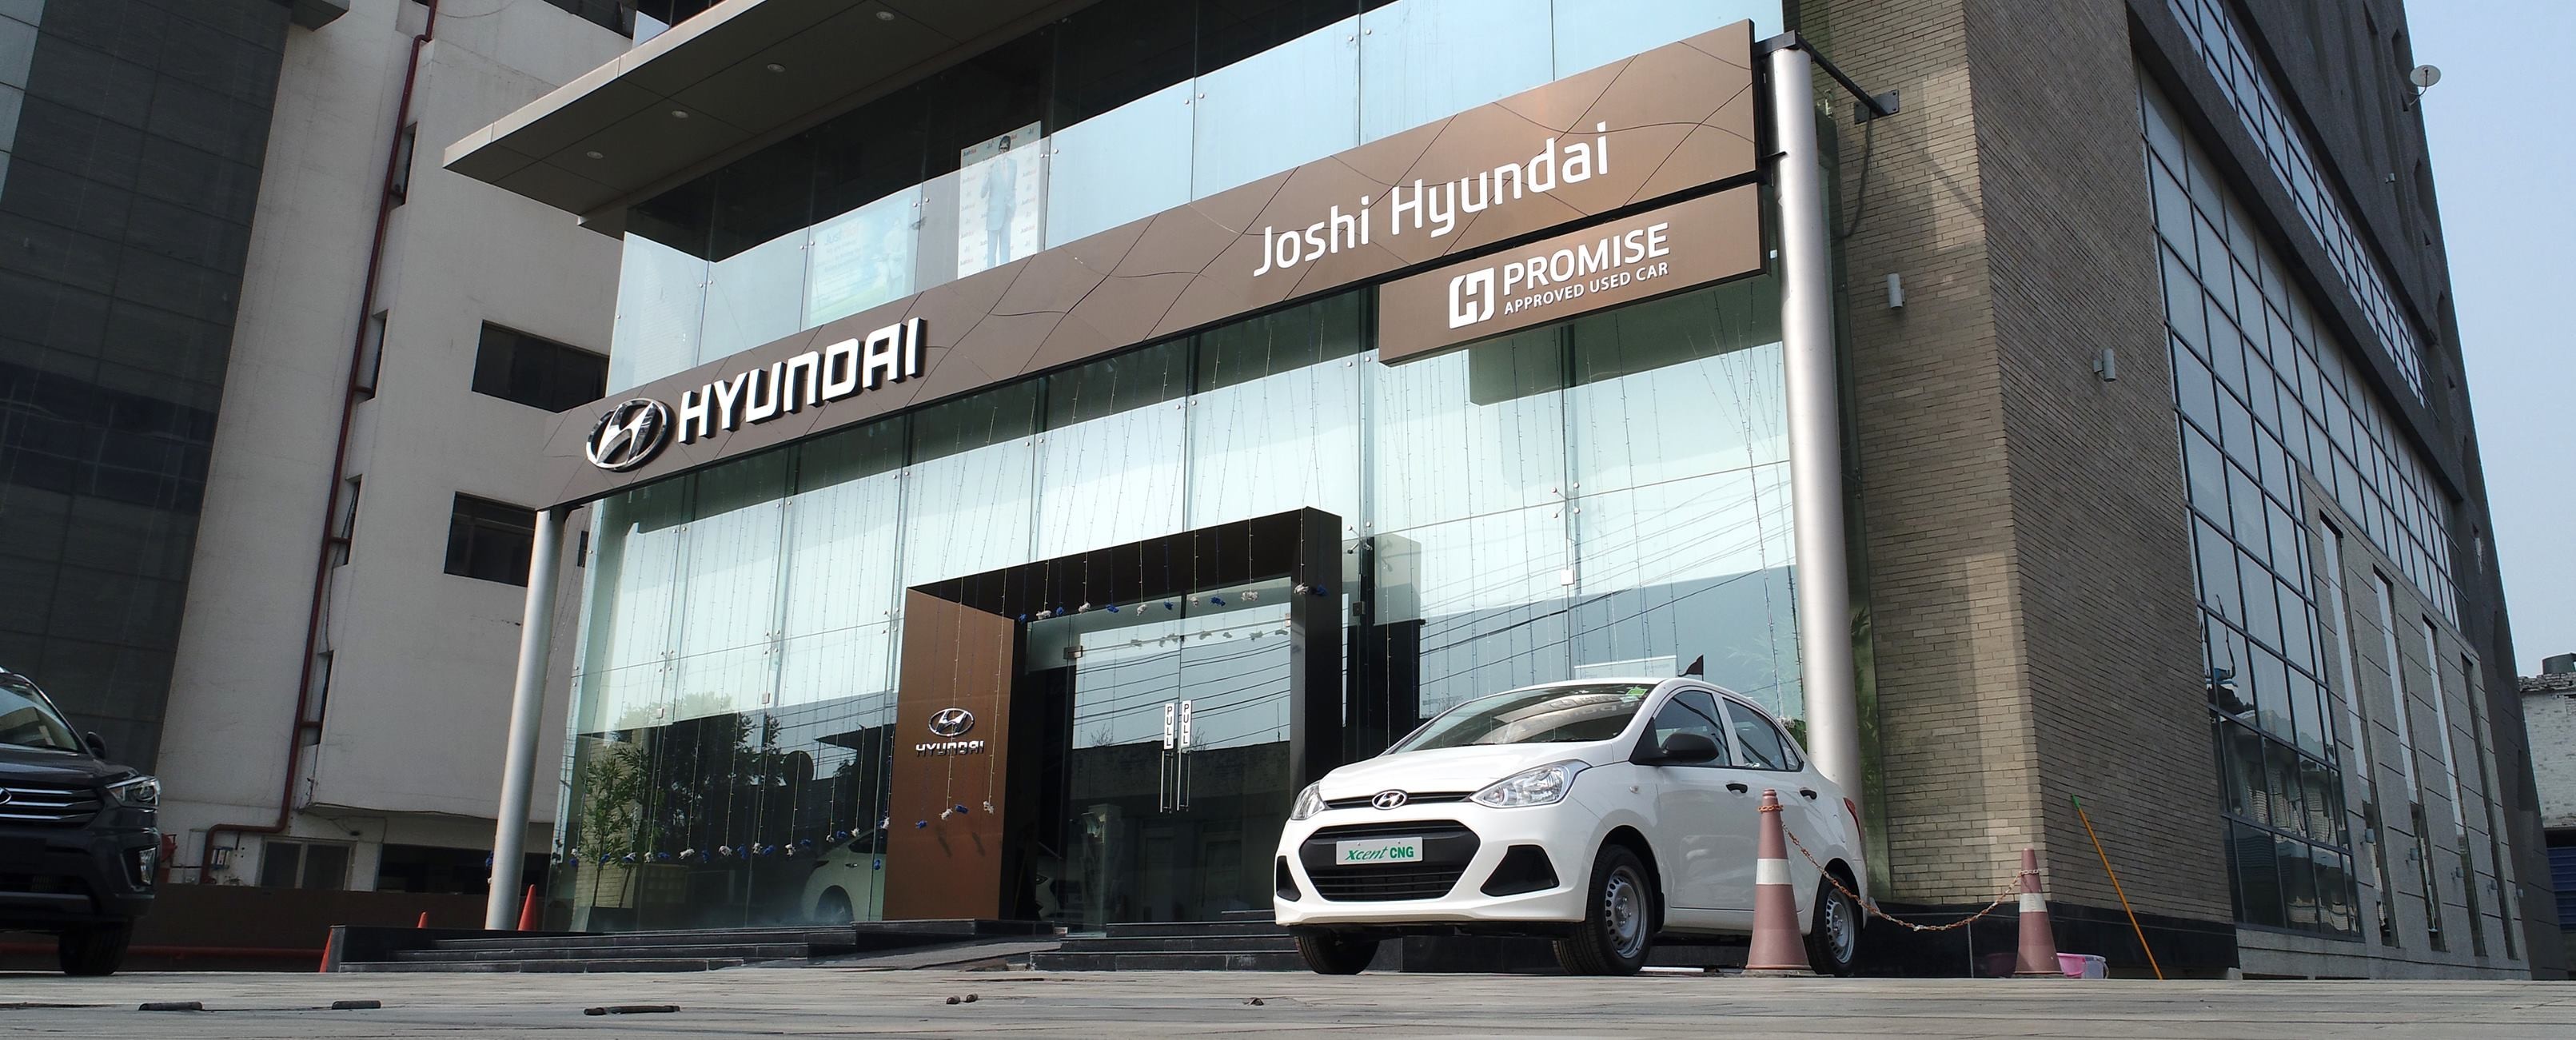 Joshi Hyundai Chandigarh